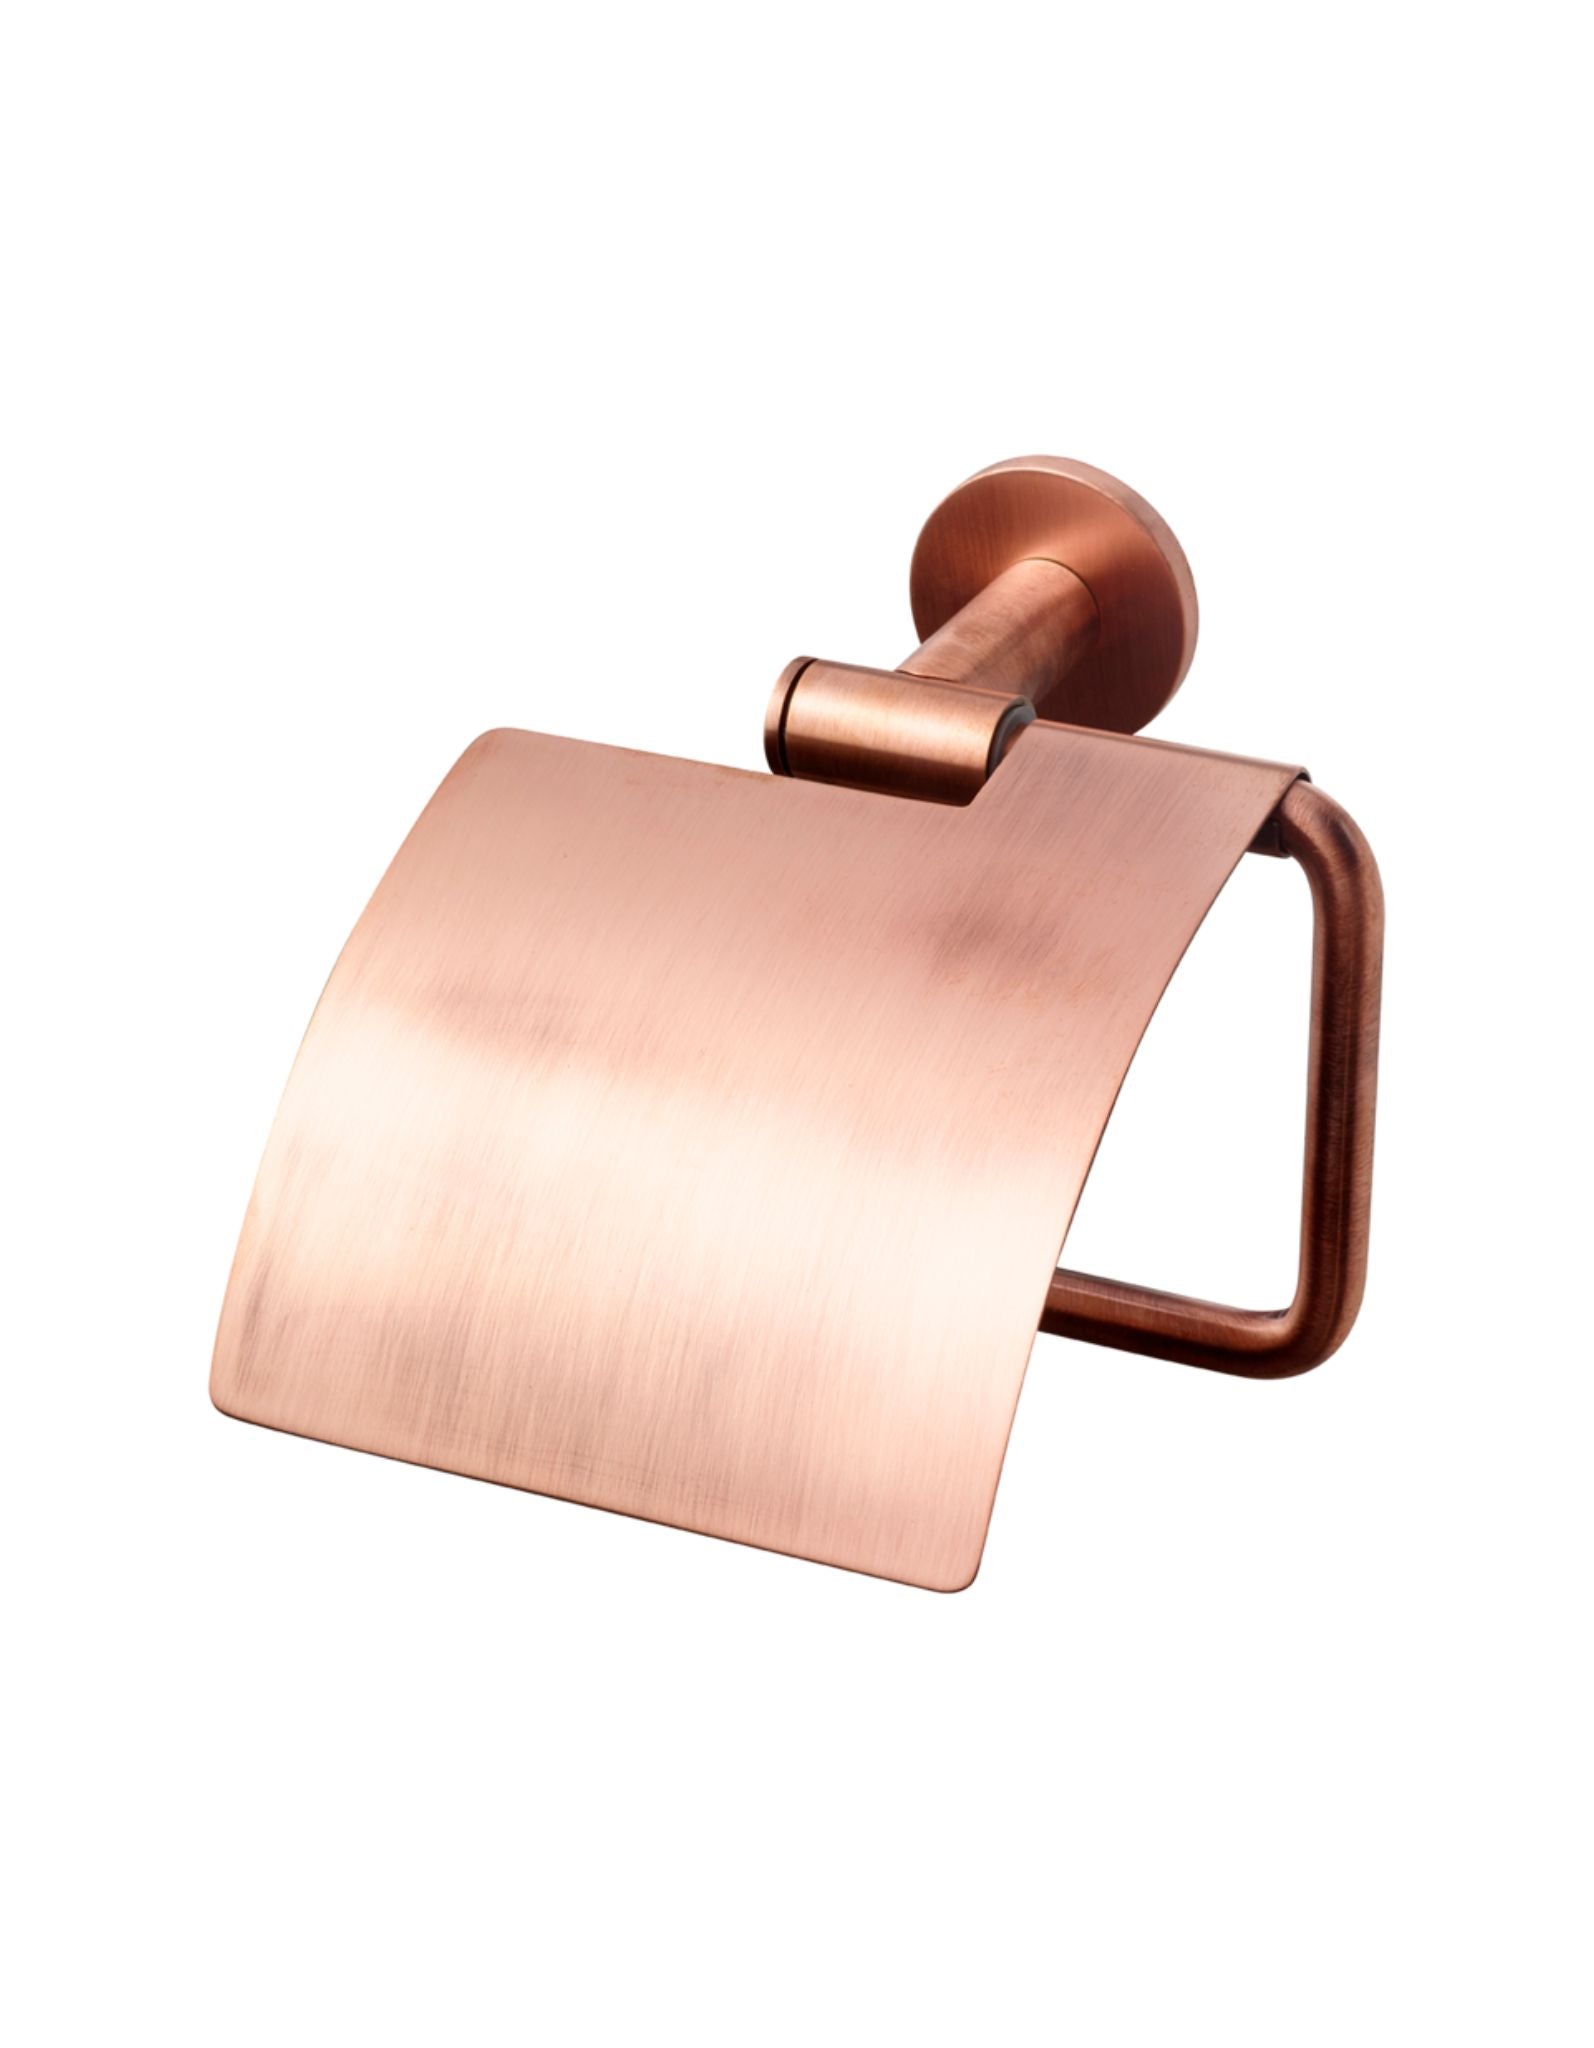 TA236 WC rúlluhaldari með hlíf - Copper